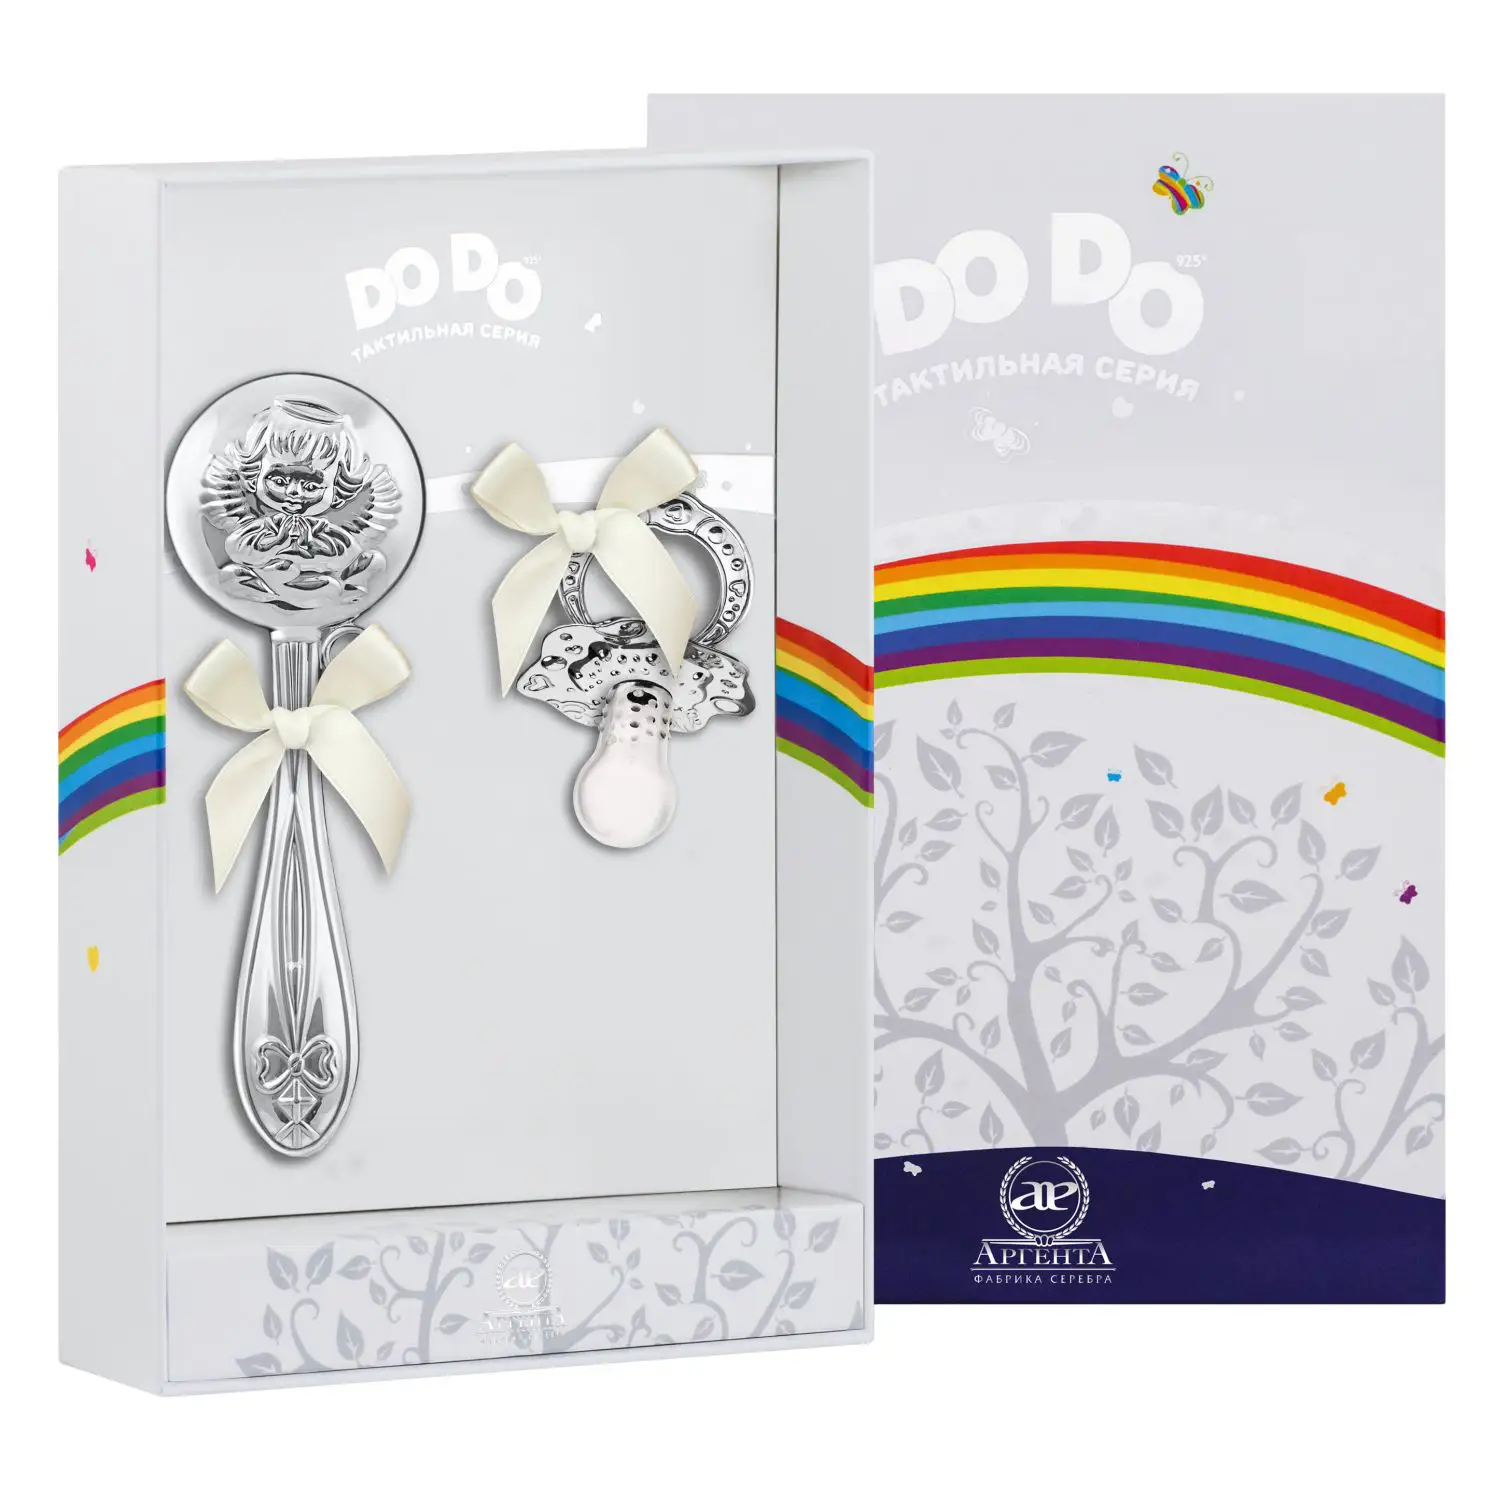 Набор для малышей DODO Ангел: погремушка и сувенир-пустышка (Серебро 925) набор для малышей dodo мишка малышка кружка погремушка сувенир пустышка серебро 925